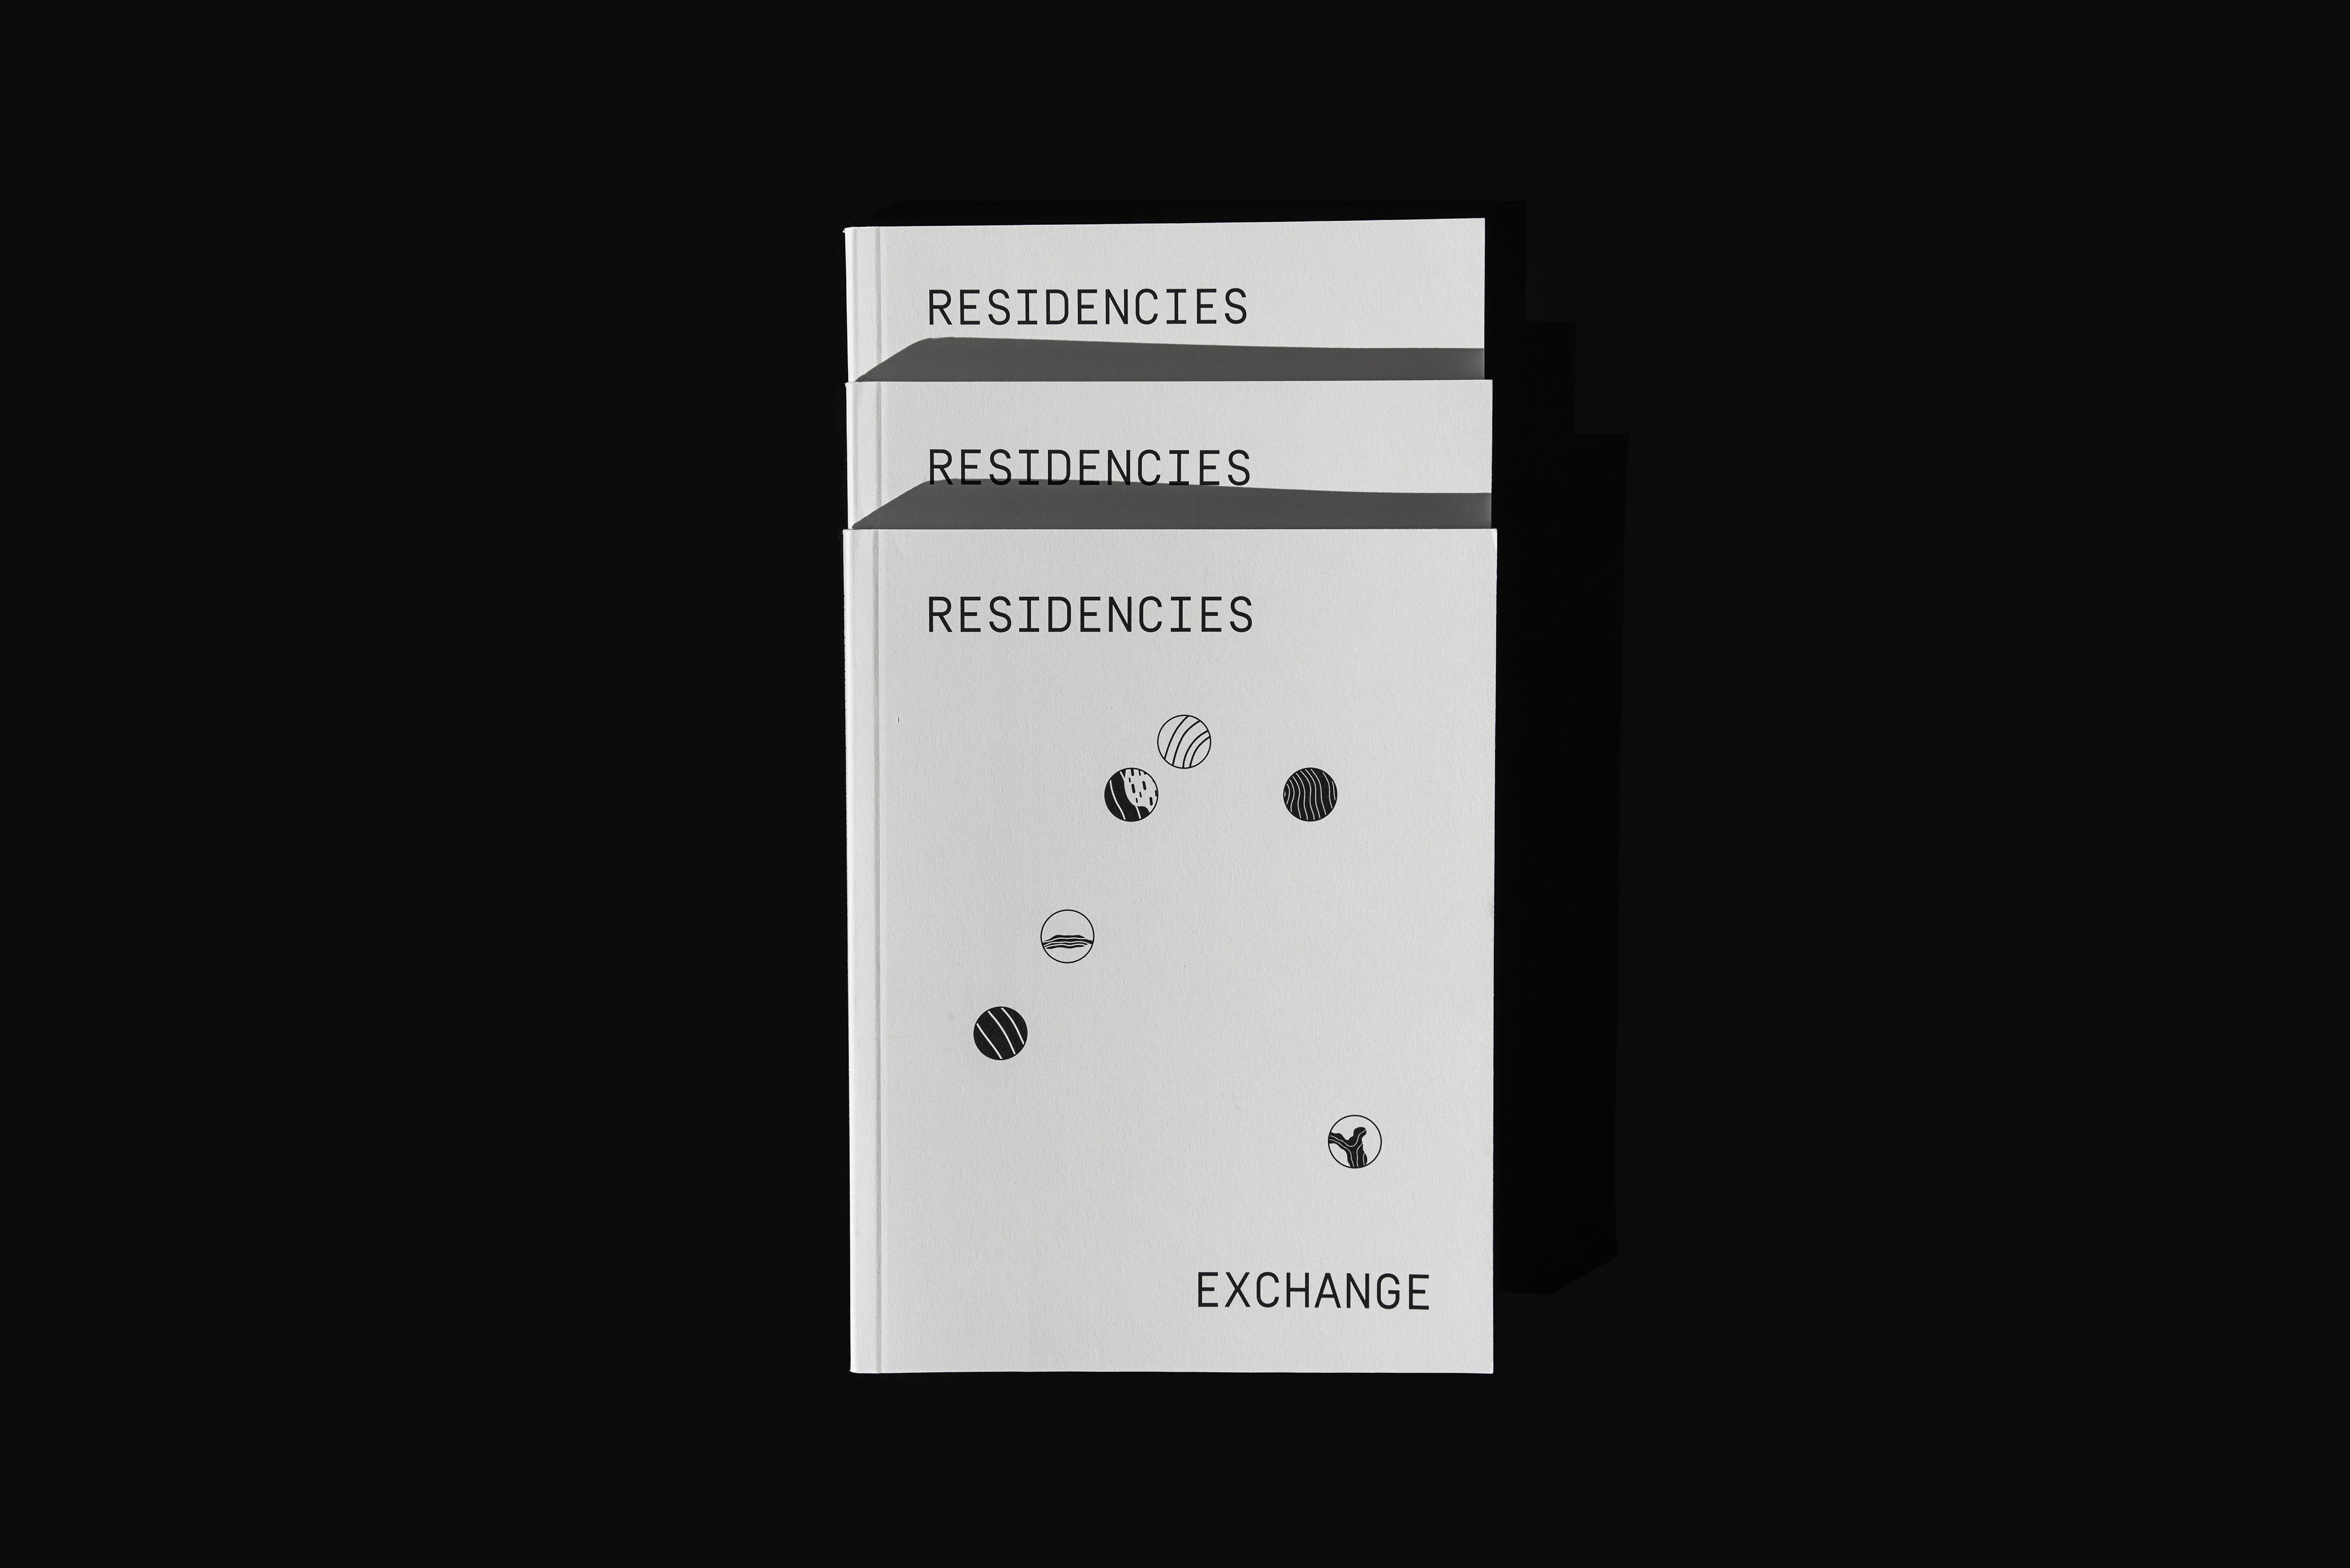 Residencies Exchange by RV.Studio - Creative Work